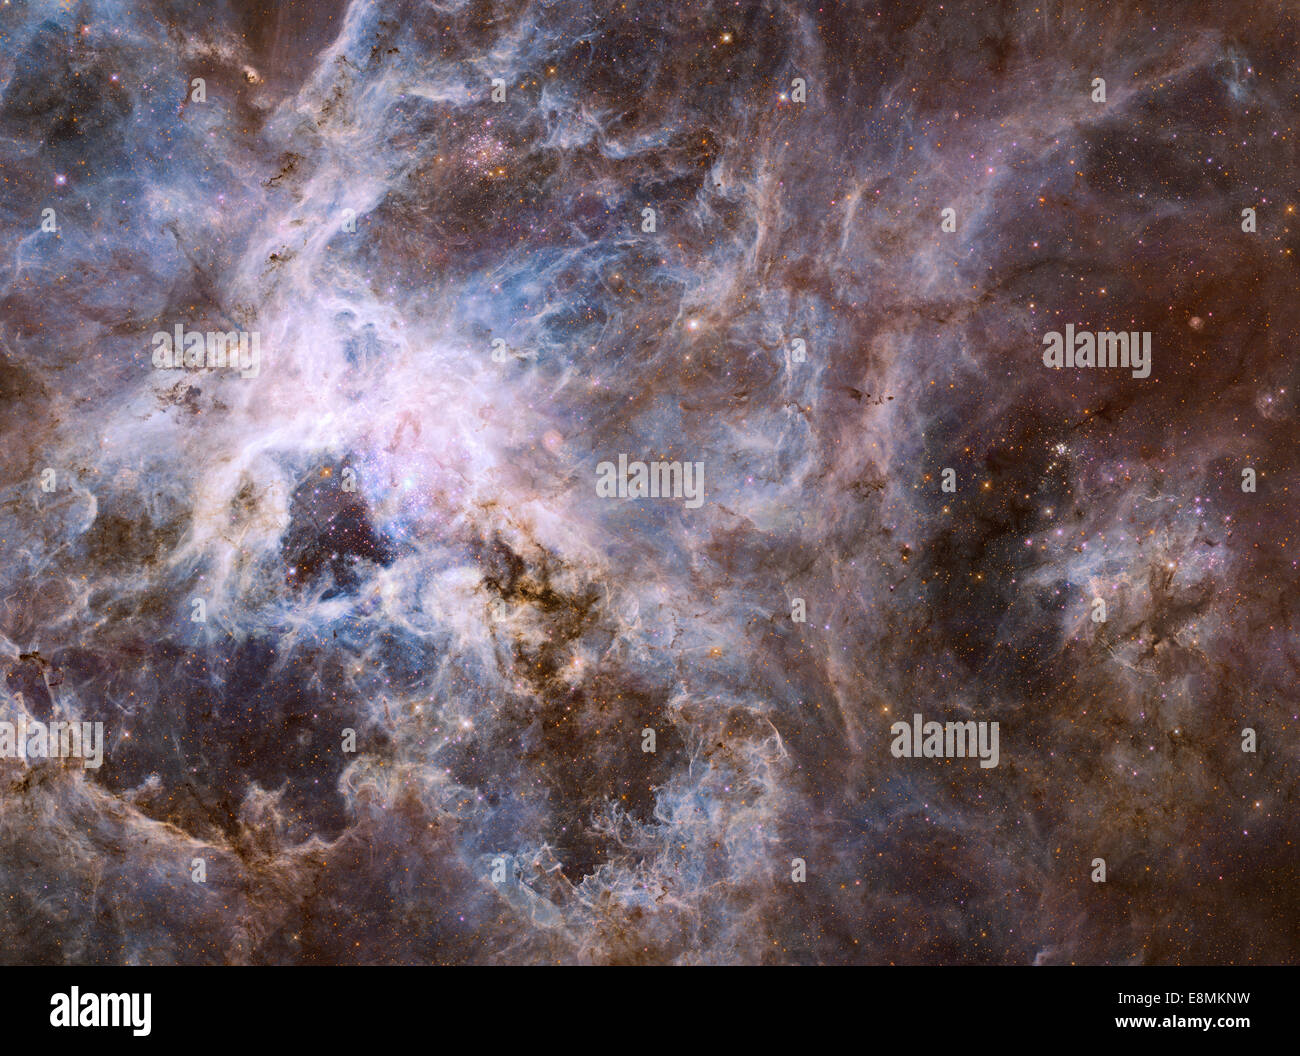 Weitfeld-Ansicht der 30 Doradus, überspannt eine breite von 600 Lichtjahre zeigt Sterne Fabrik der mehr 800.000 Stars geboren. Th Stockfoto